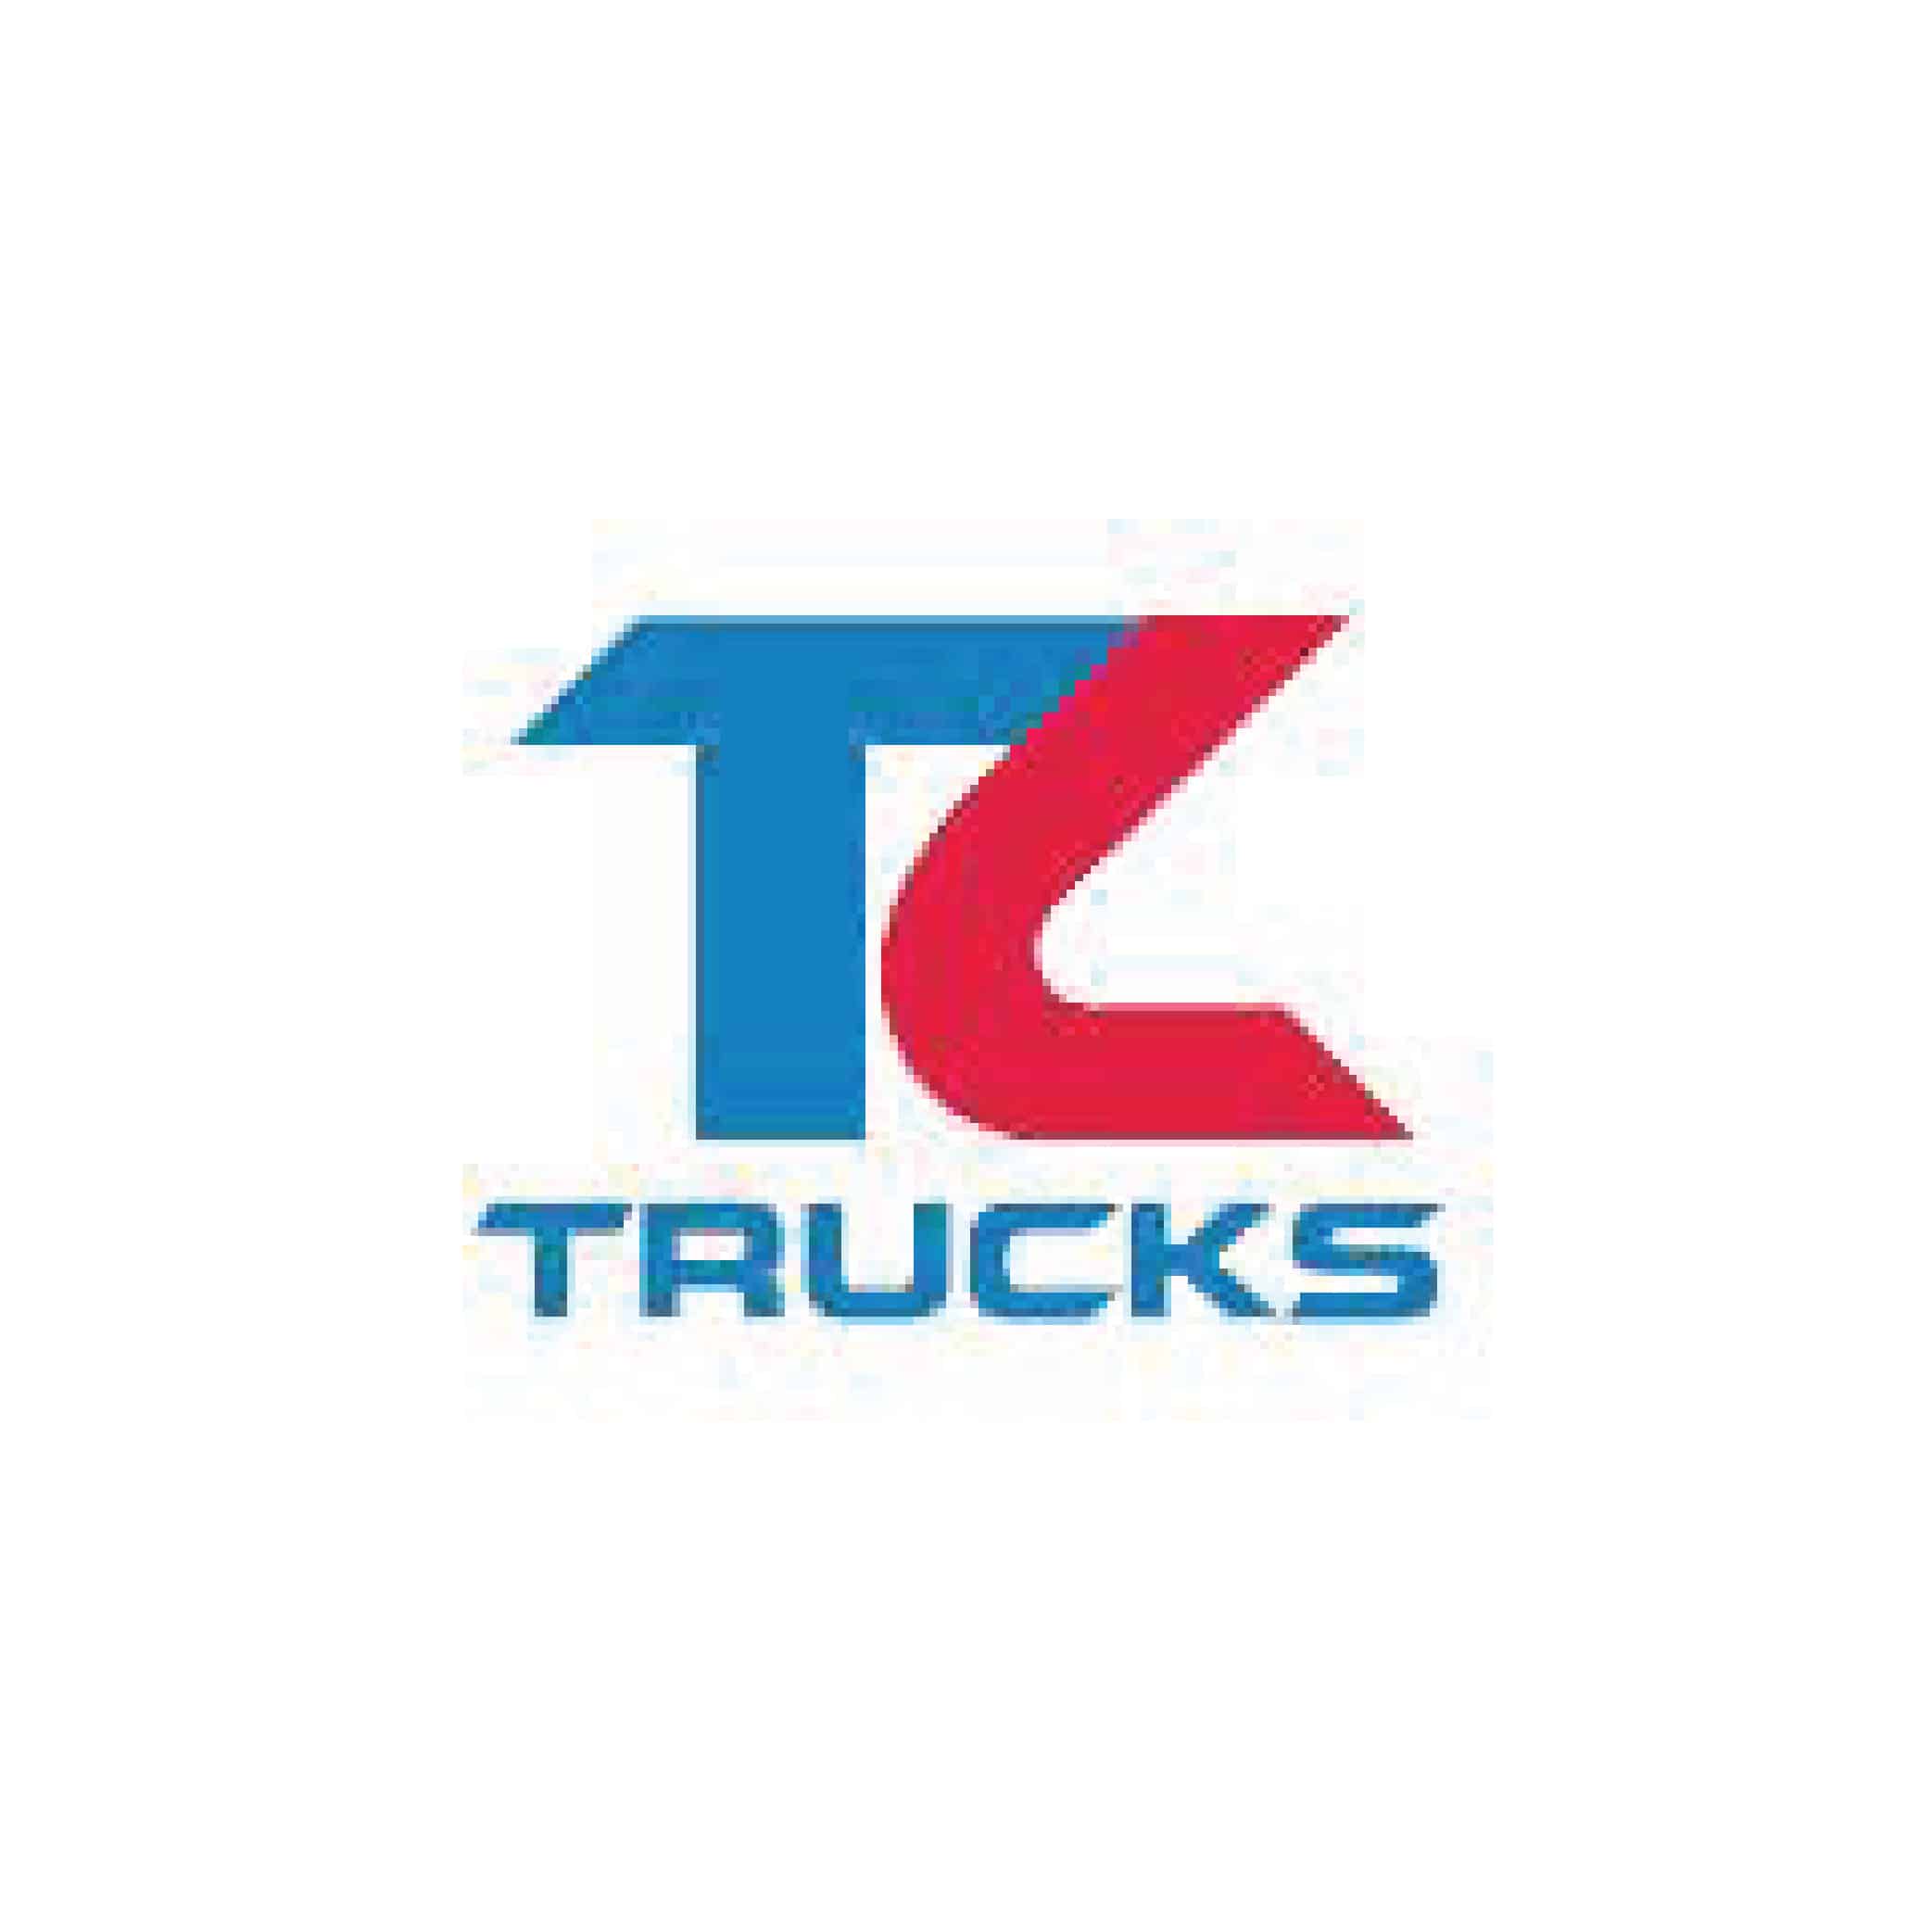 TK Trucks logo